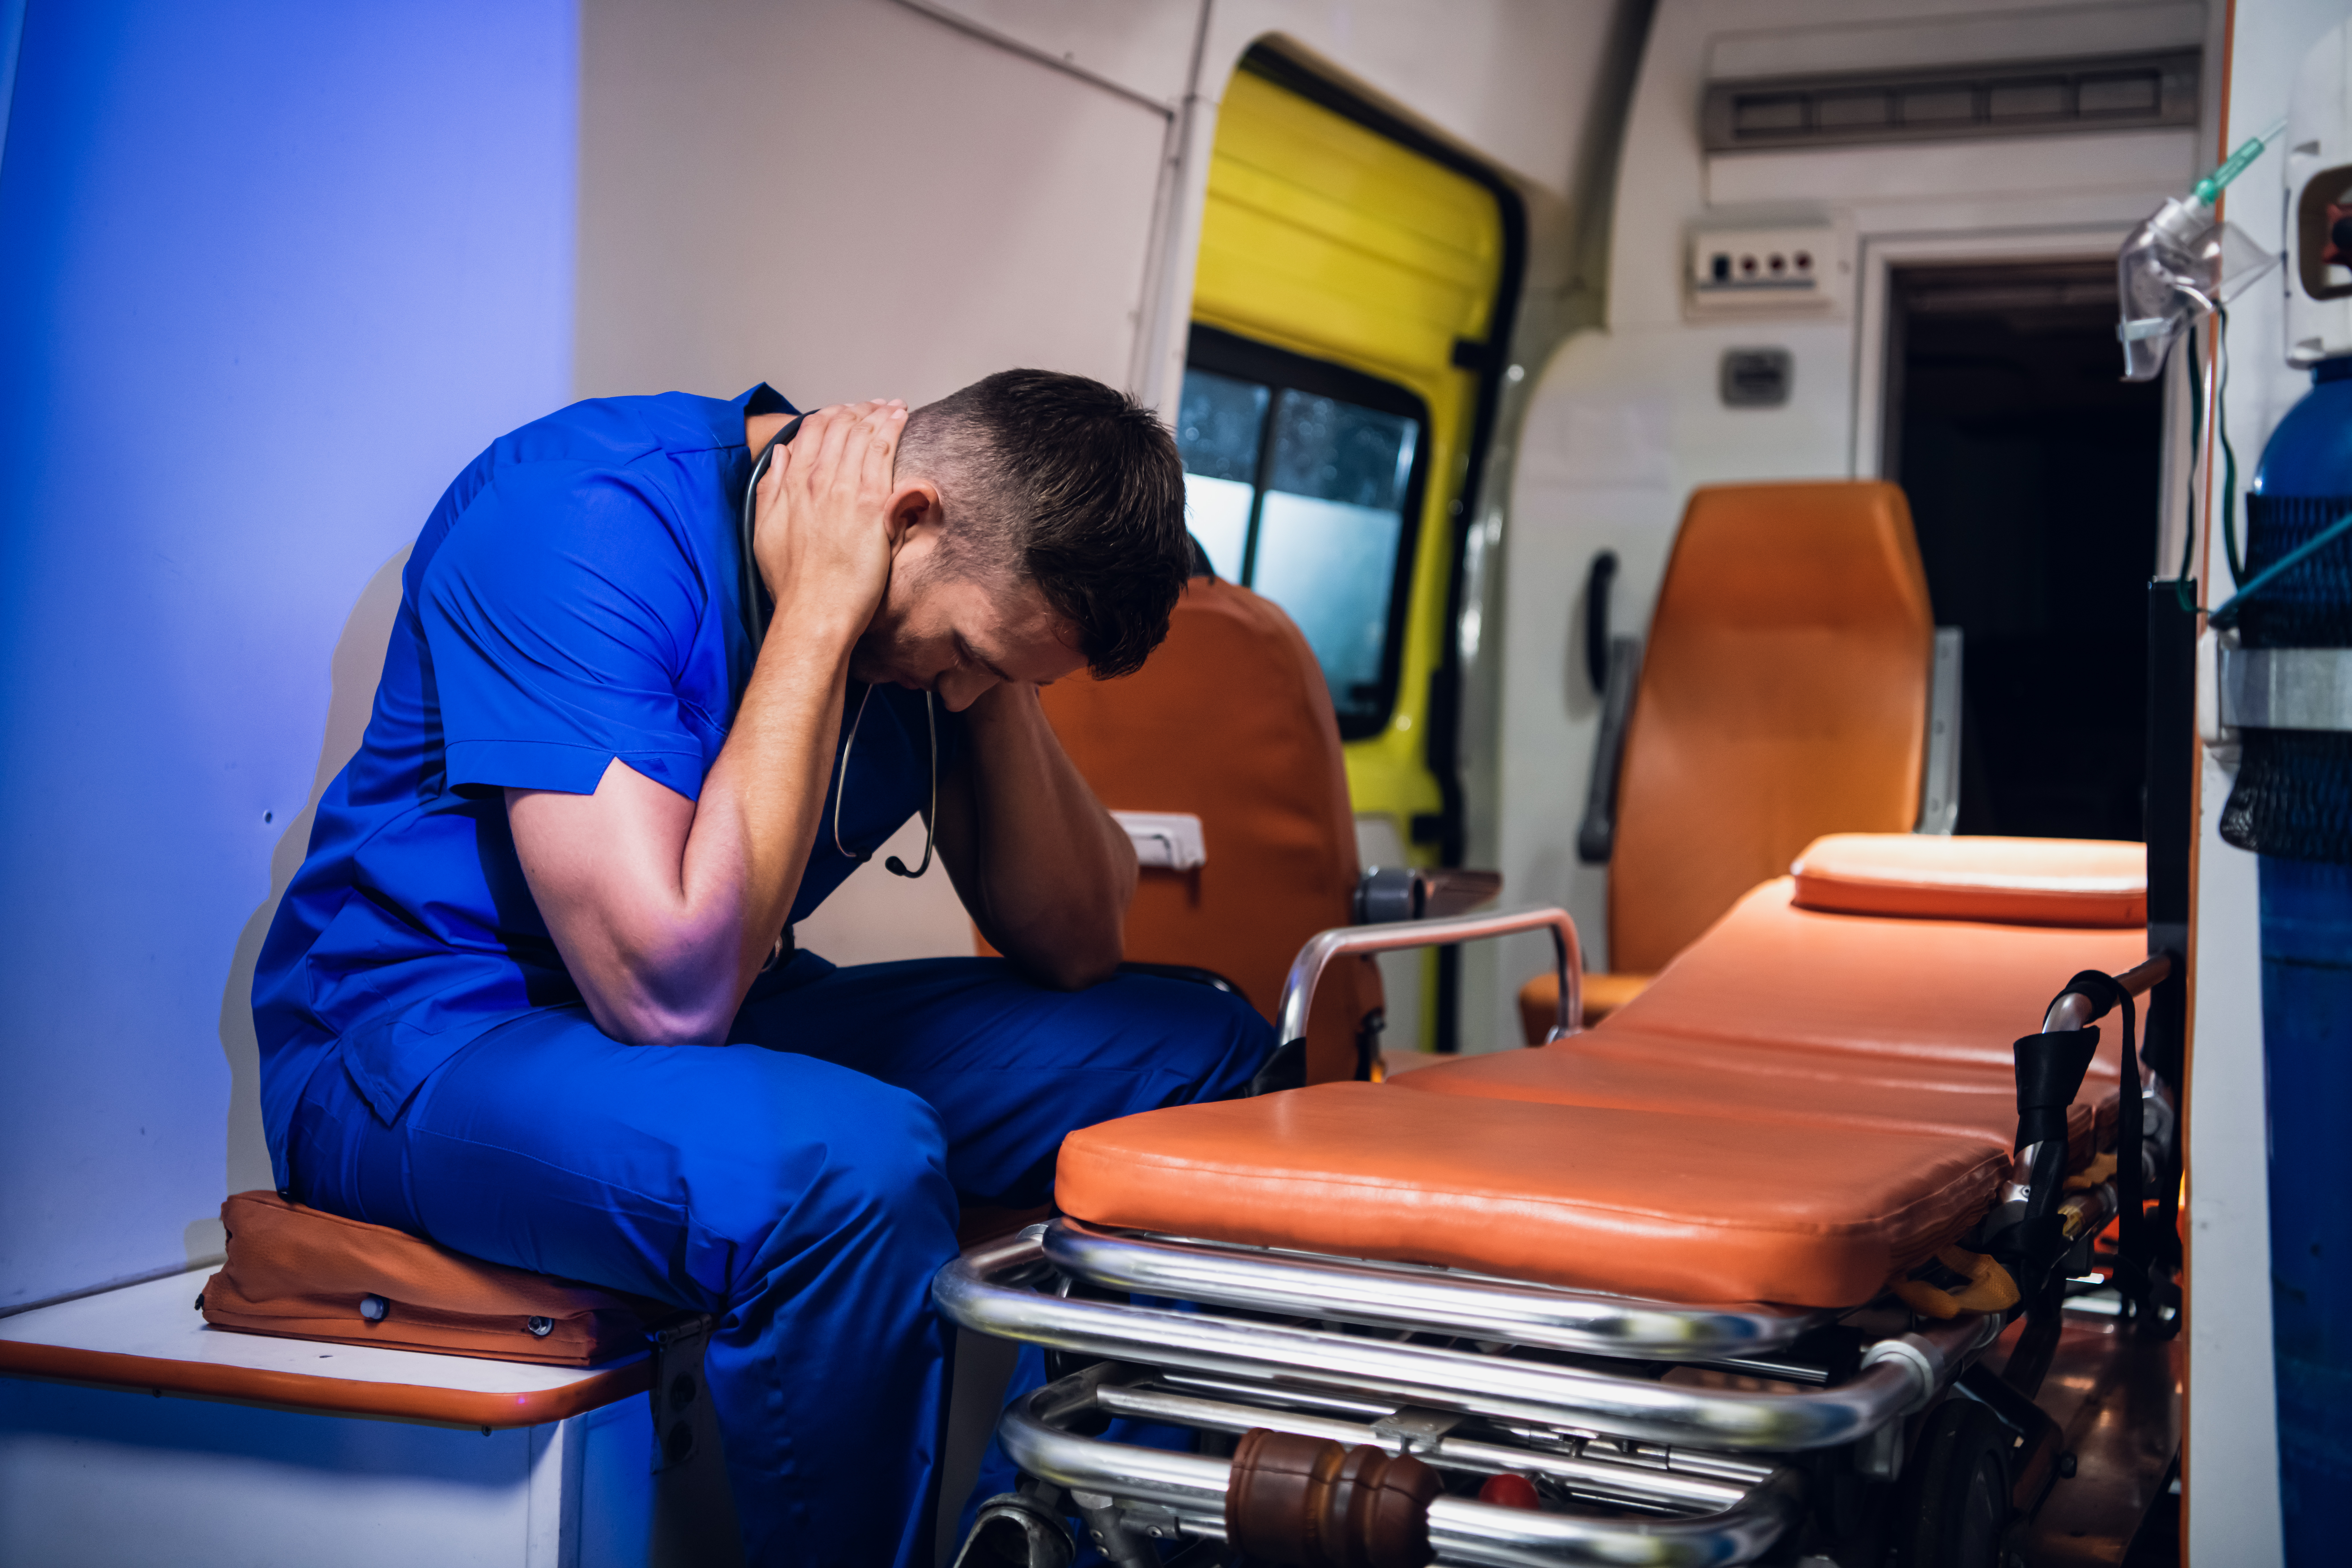 Ein erschöpfter Sanitäter, der sich eine kleine Pause gönnt, indem er in einem Krankenwagen sitzt und die Hände um den Hals legt | Quelle: Shutterstock